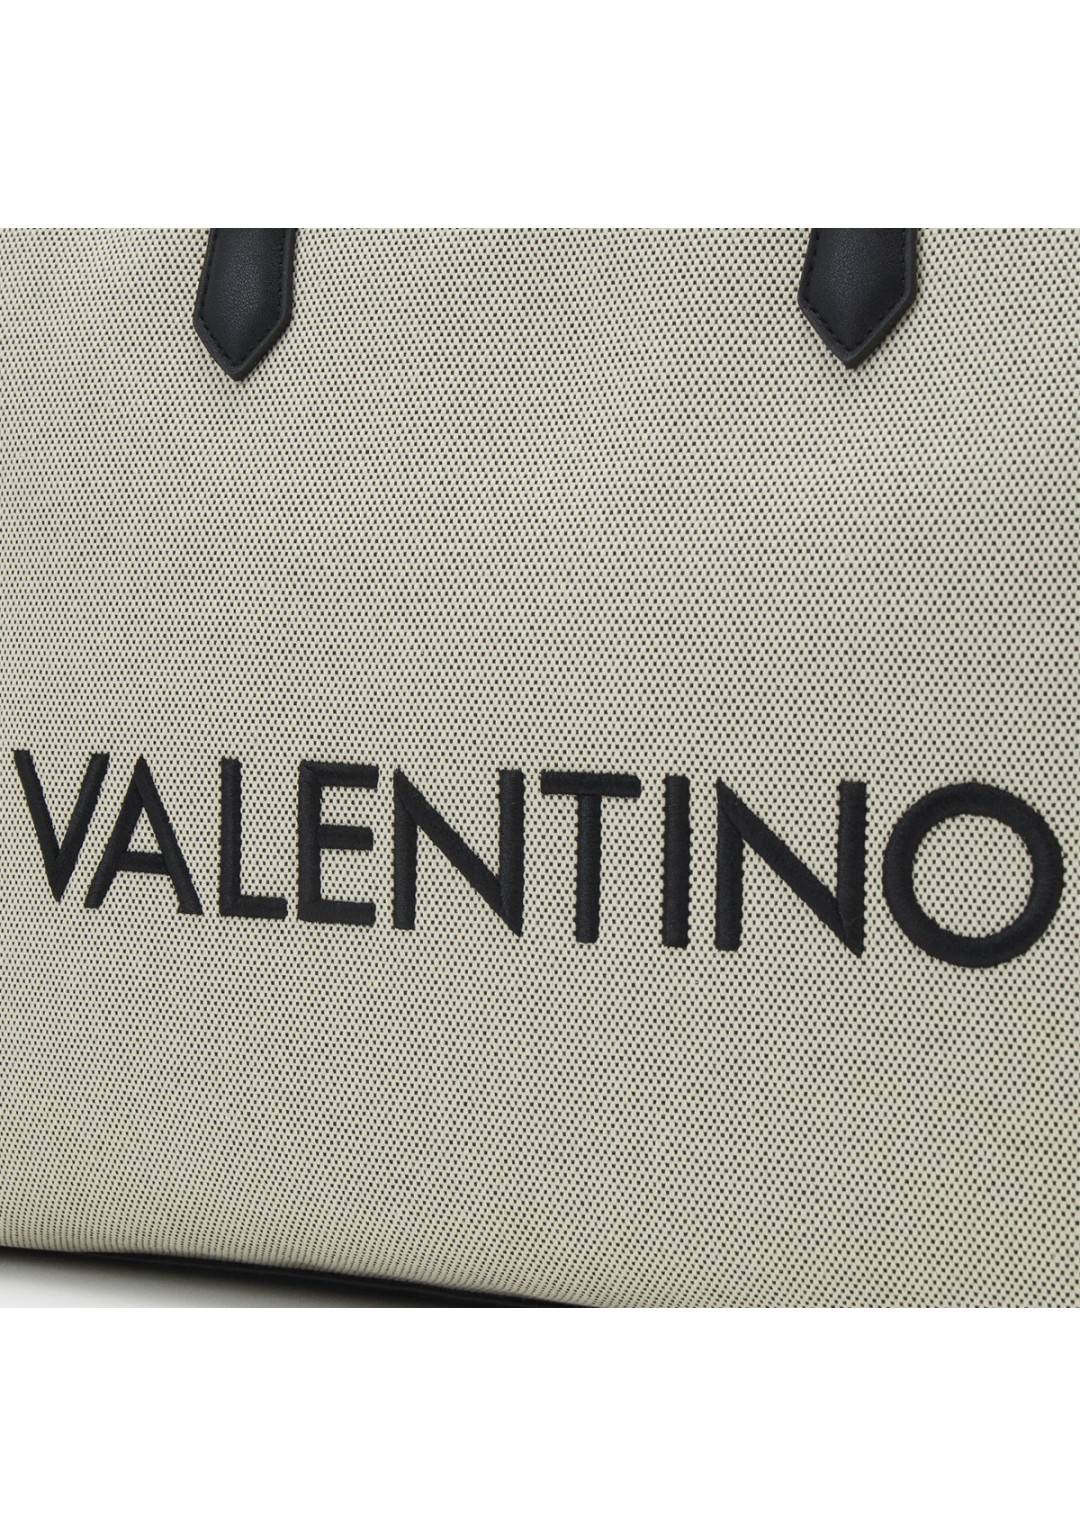 Valentino - Borsa Media - Donna - Chelsea Re T02